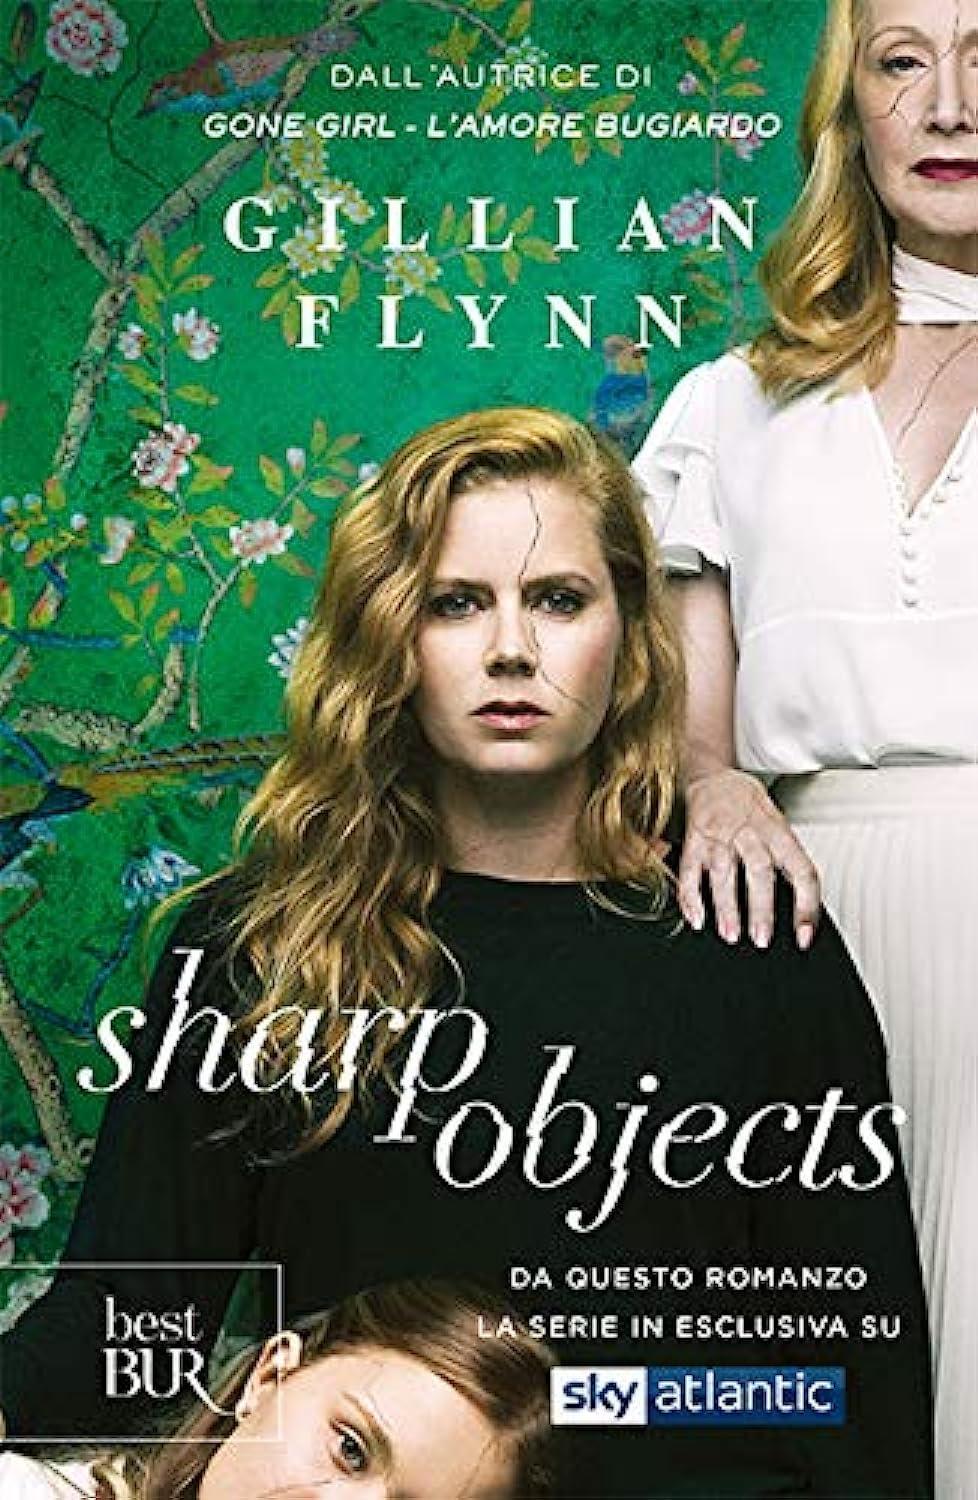 Libro "Sharp objects (Sulla pelle)" di Gillian Flynn